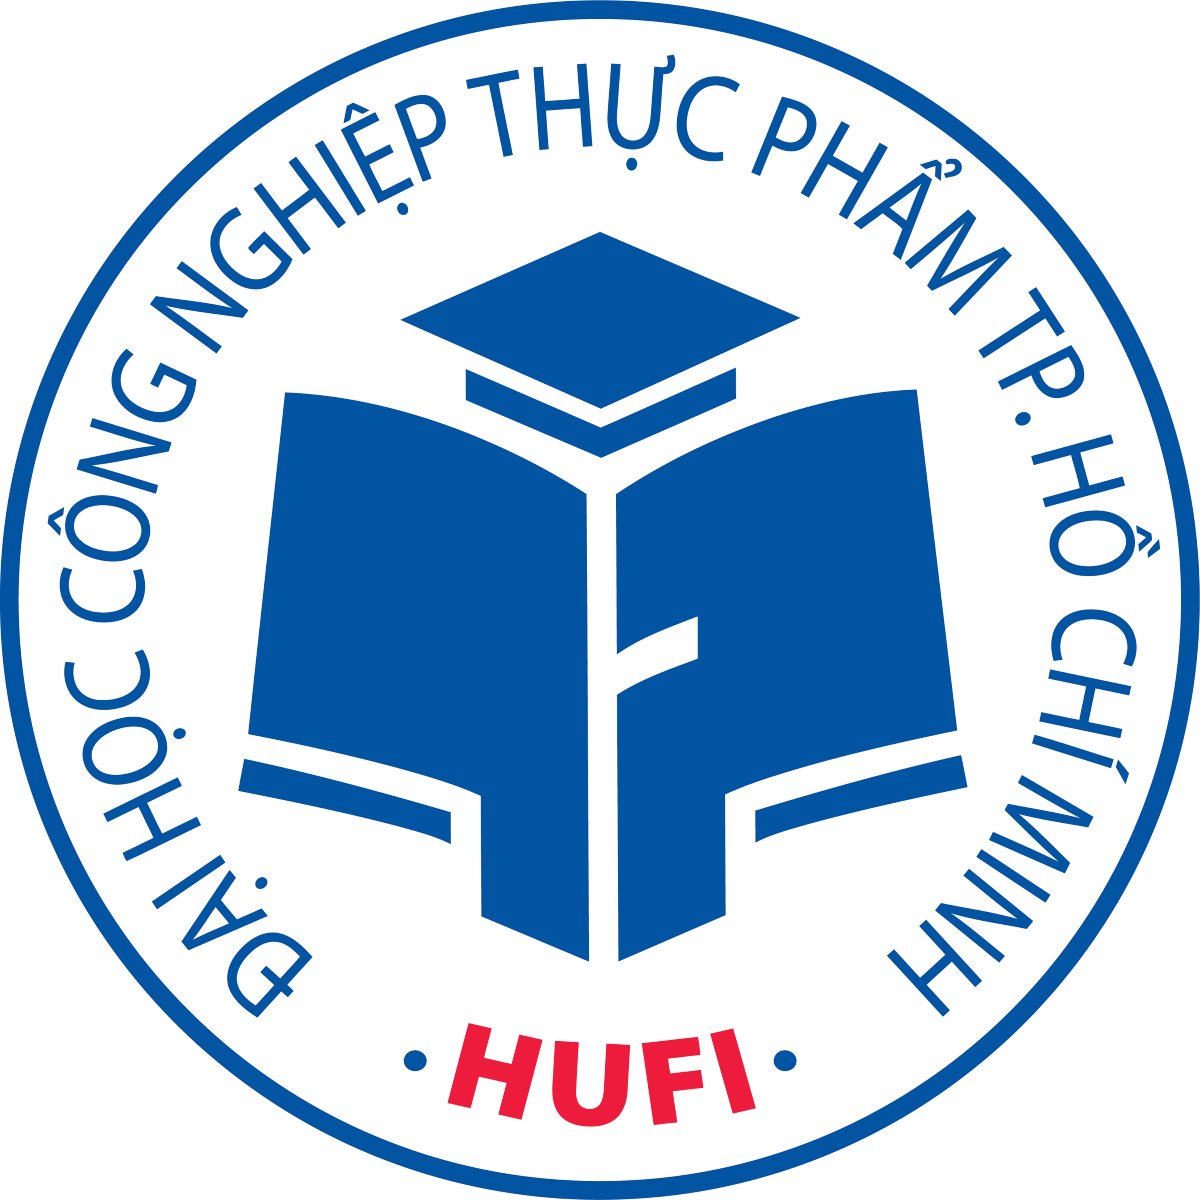 Thiết kế logo hufi chuyên nghiệp và độc đáo tại TP. Hồ Chí Minh